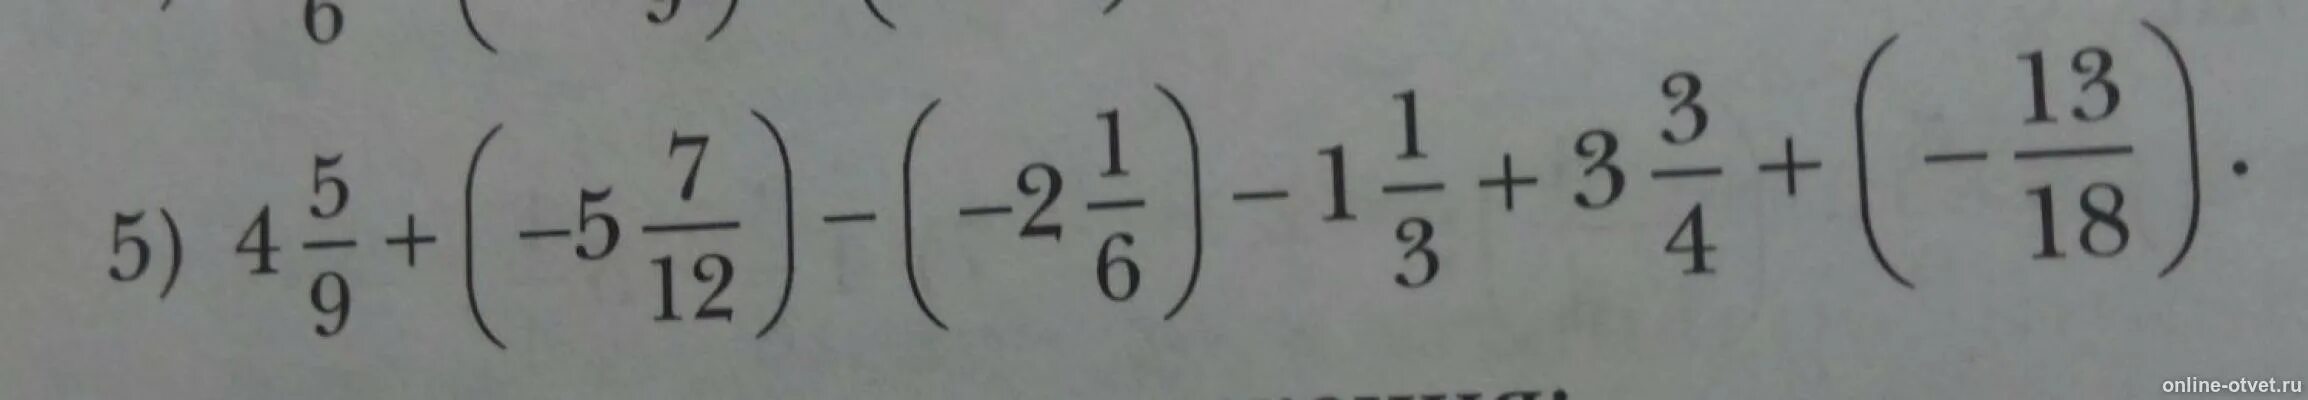 7 12 13 ответ. 4,5/9+(-5,7/12)-(2,1/6)-1,1/3+3,3/4+(-13/18). Одна пять шестых +4+(-2 1/12. 1 5/6+4+ -2 1/12. 5 1/3 : 6 2/5 + (12:3 3/5 2-3) 2/3 Решение.